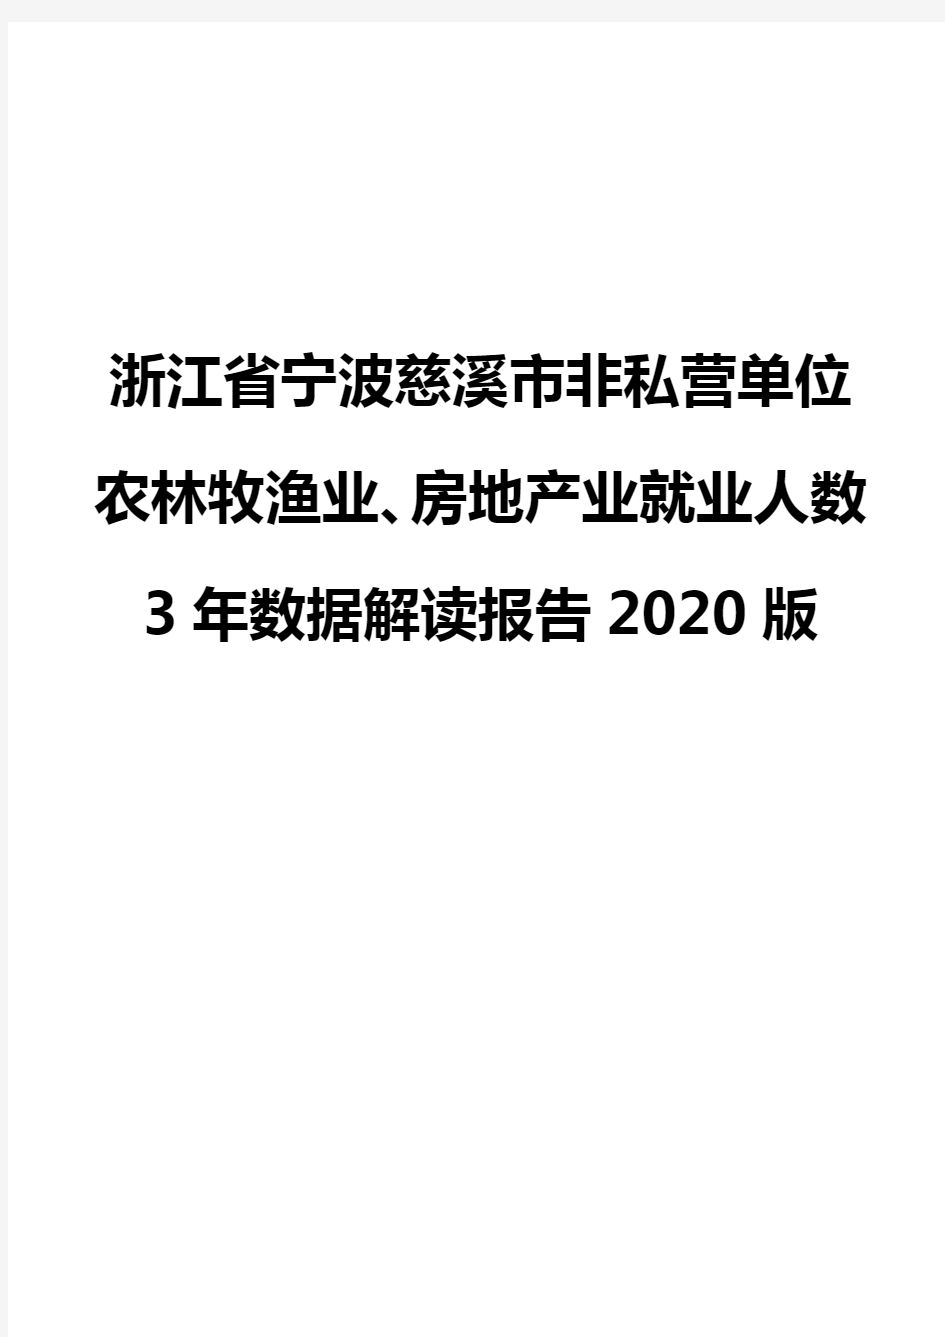 浙江省宁波慈溪市非私营单位农林牧渔业、房地产业就业人数3年数据解读报告2020版